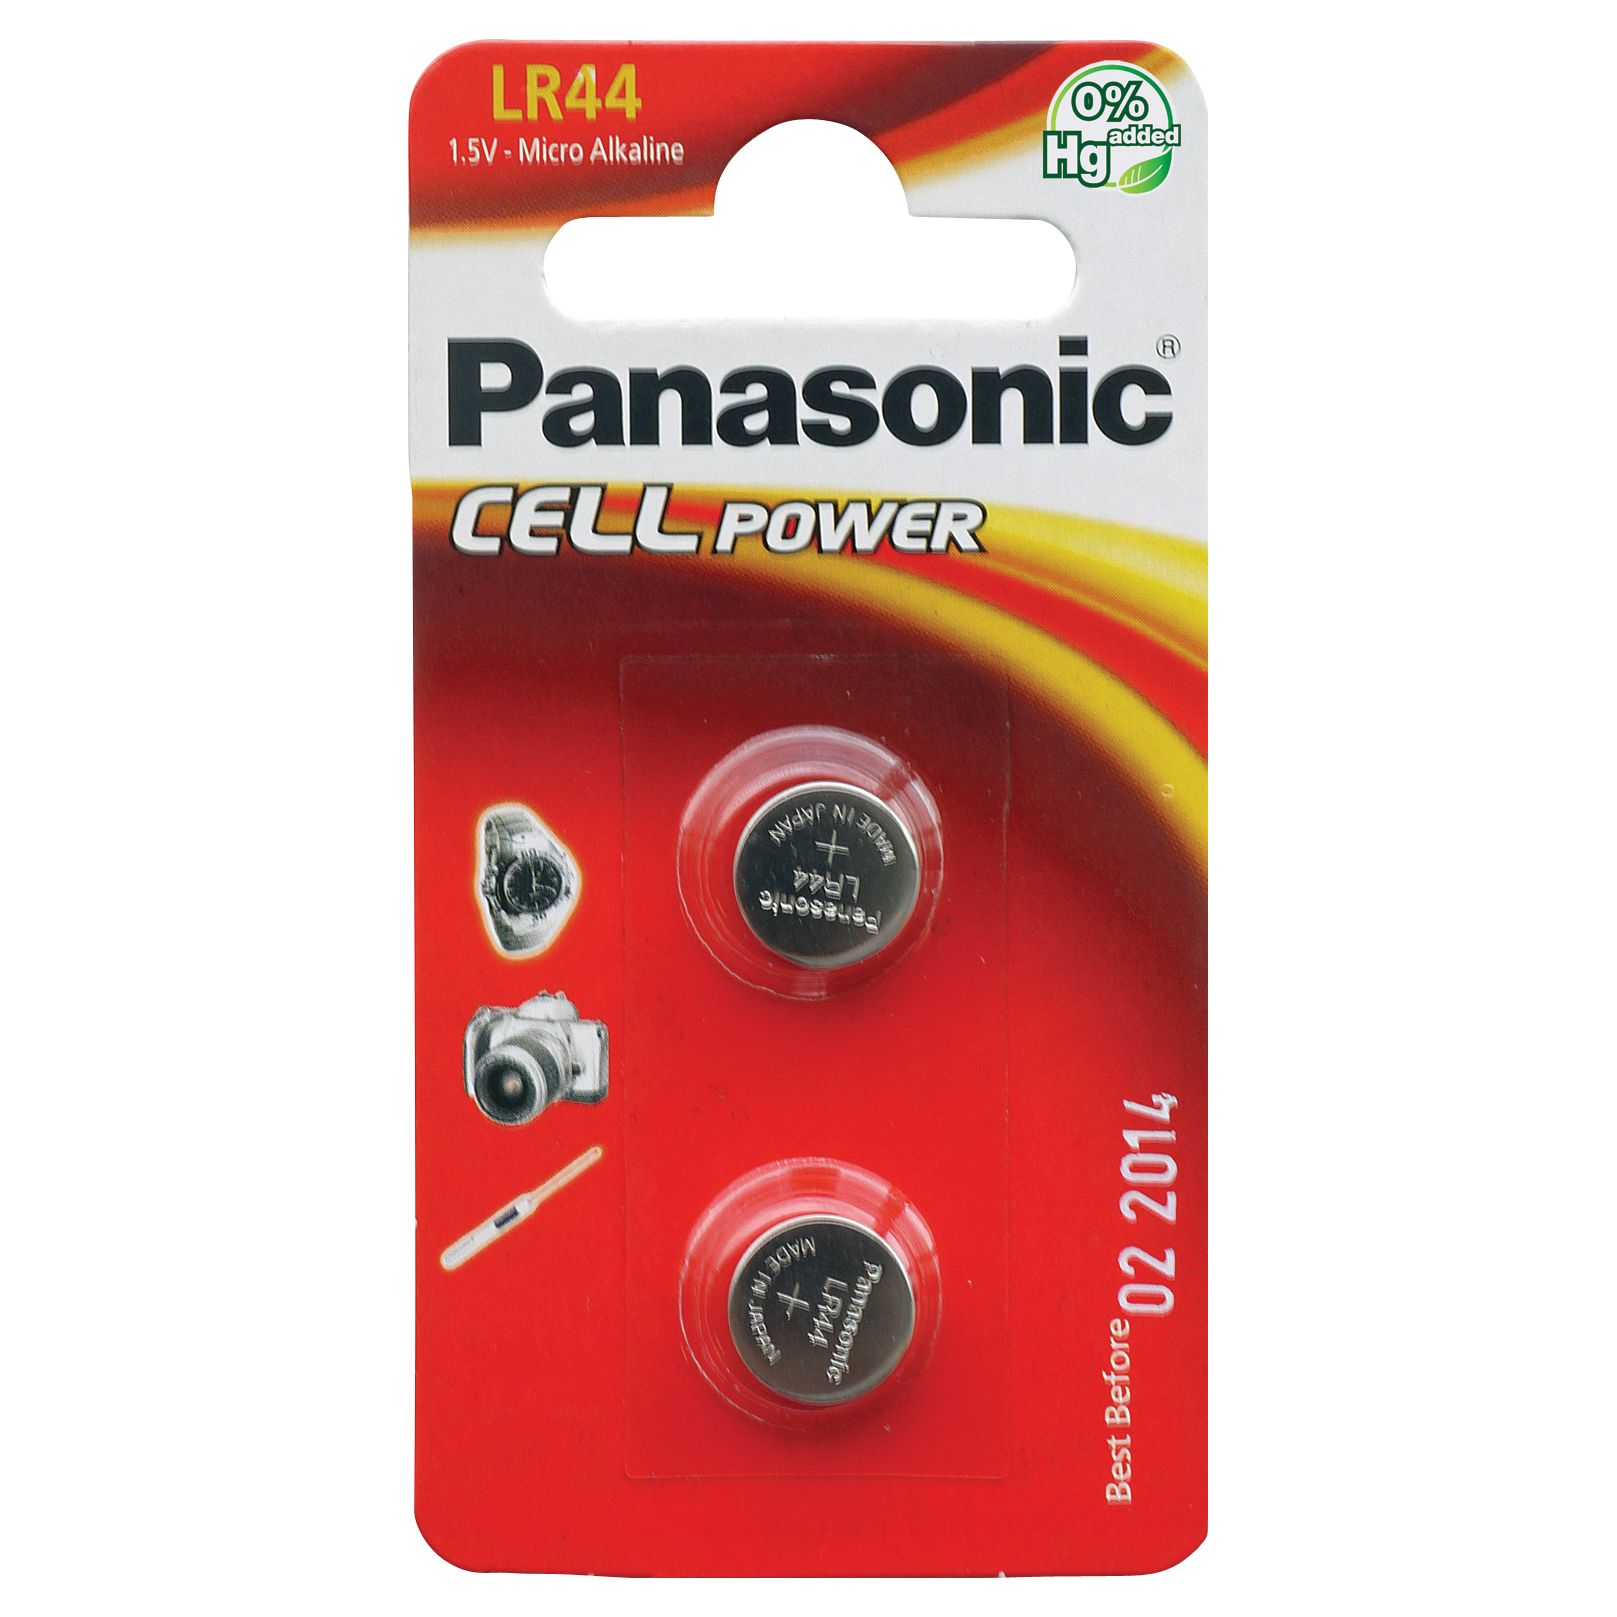 Panasonic 1.5V Alkaline Coin Cell Battery, LR-44/2BP